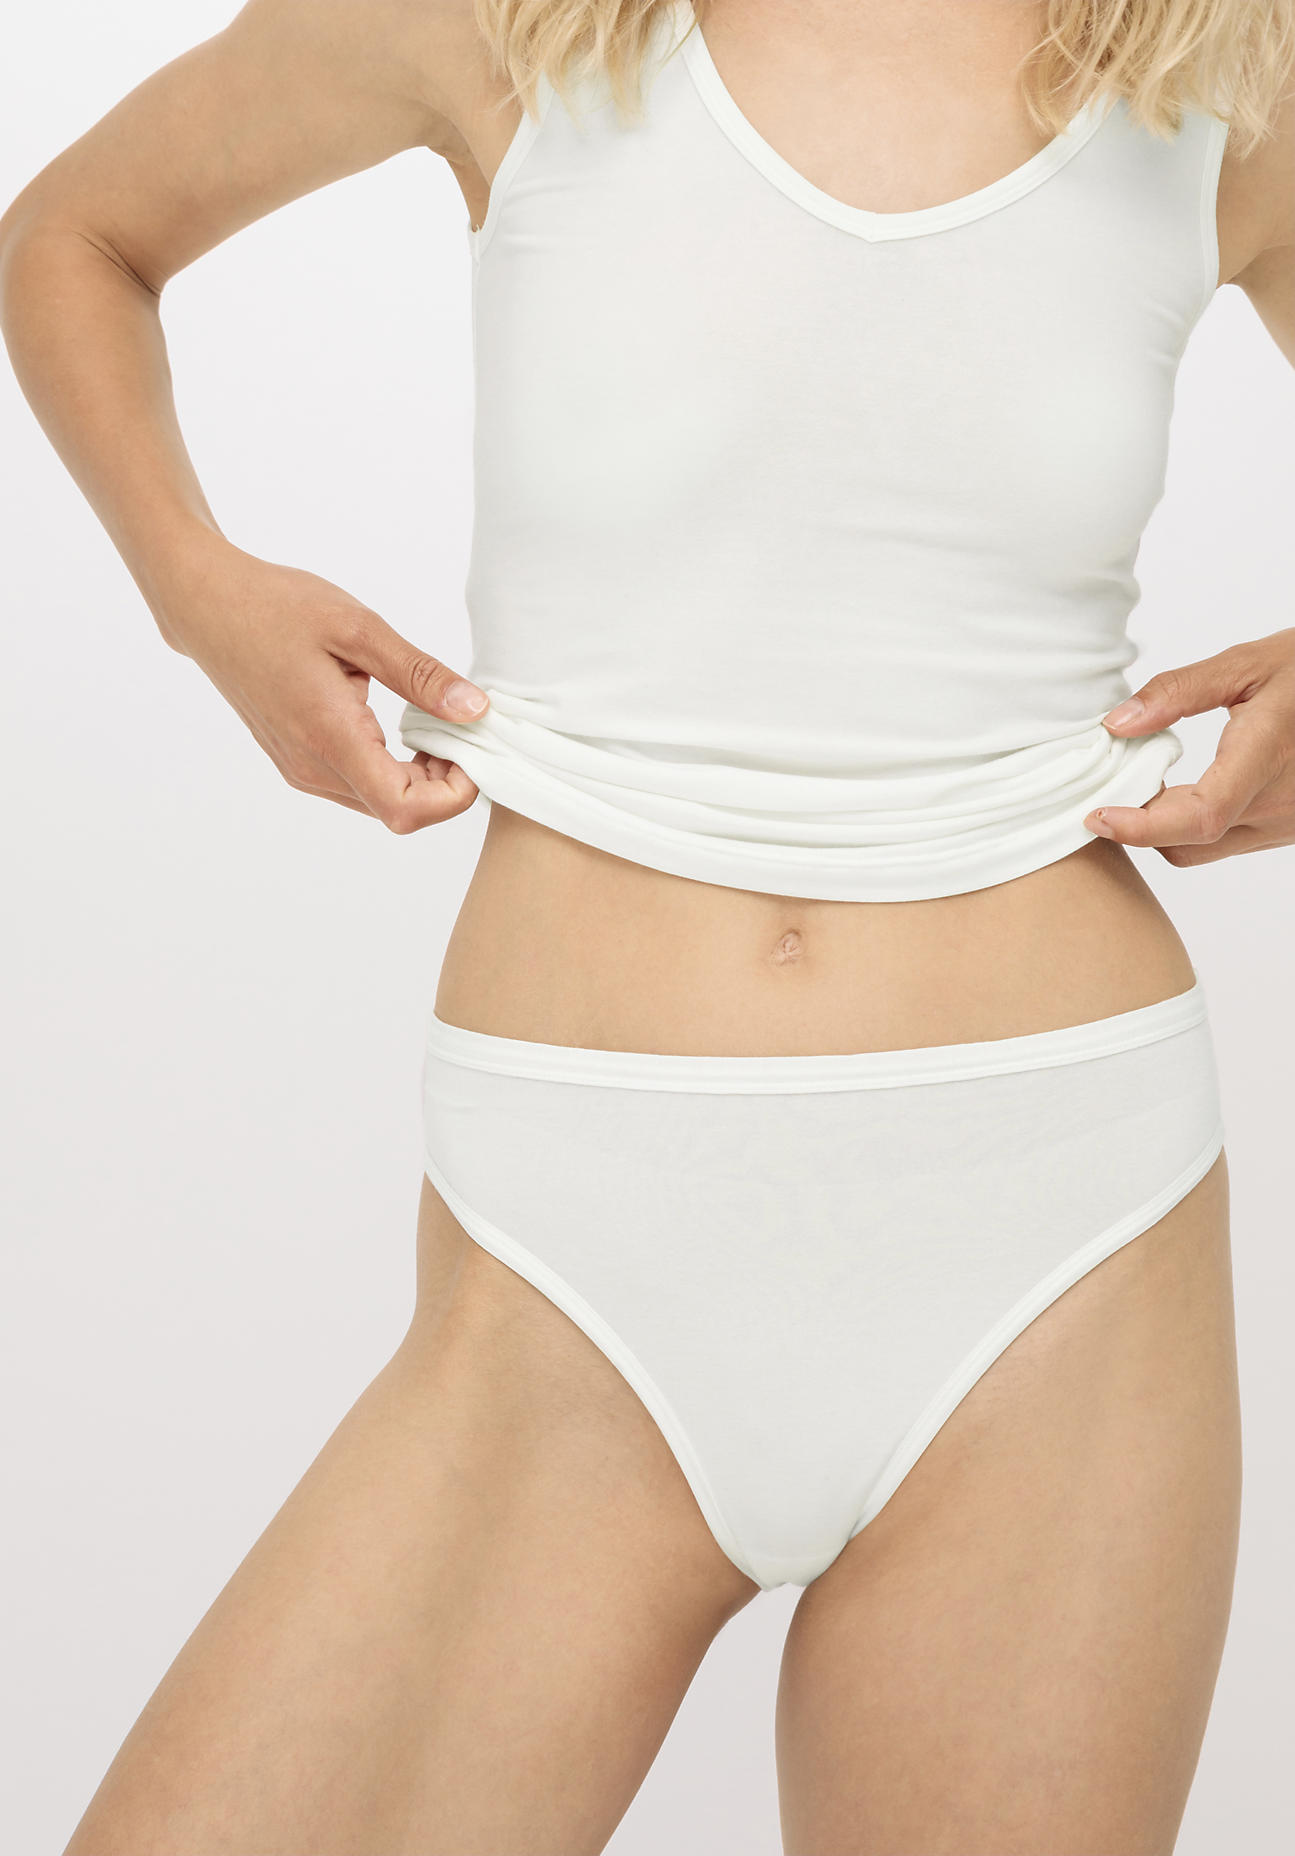 hessnatur Damen Slip high waist aus Bio-Baumwolle und Tencel™ Modal - weiß - Größe 44